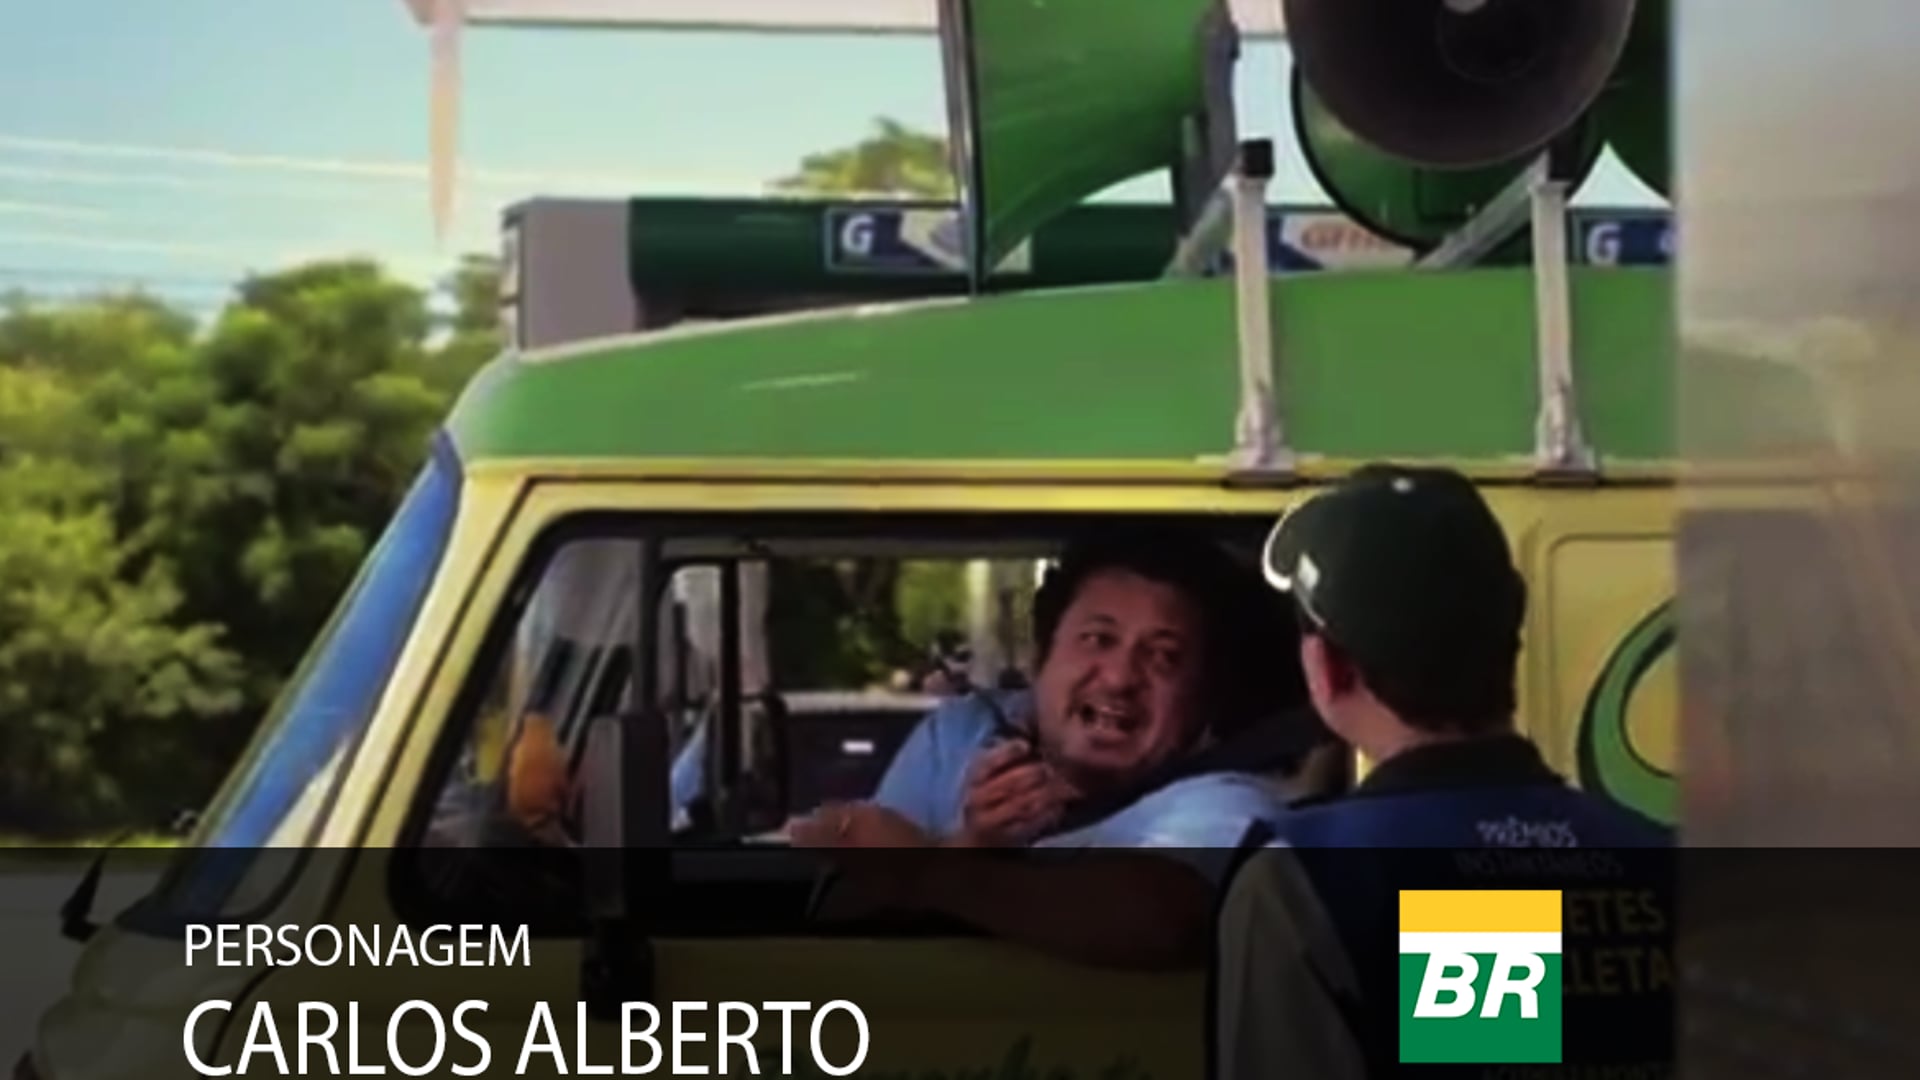 Hilton Castro - comercial "Posto BR" personagem: Carlos Auberto